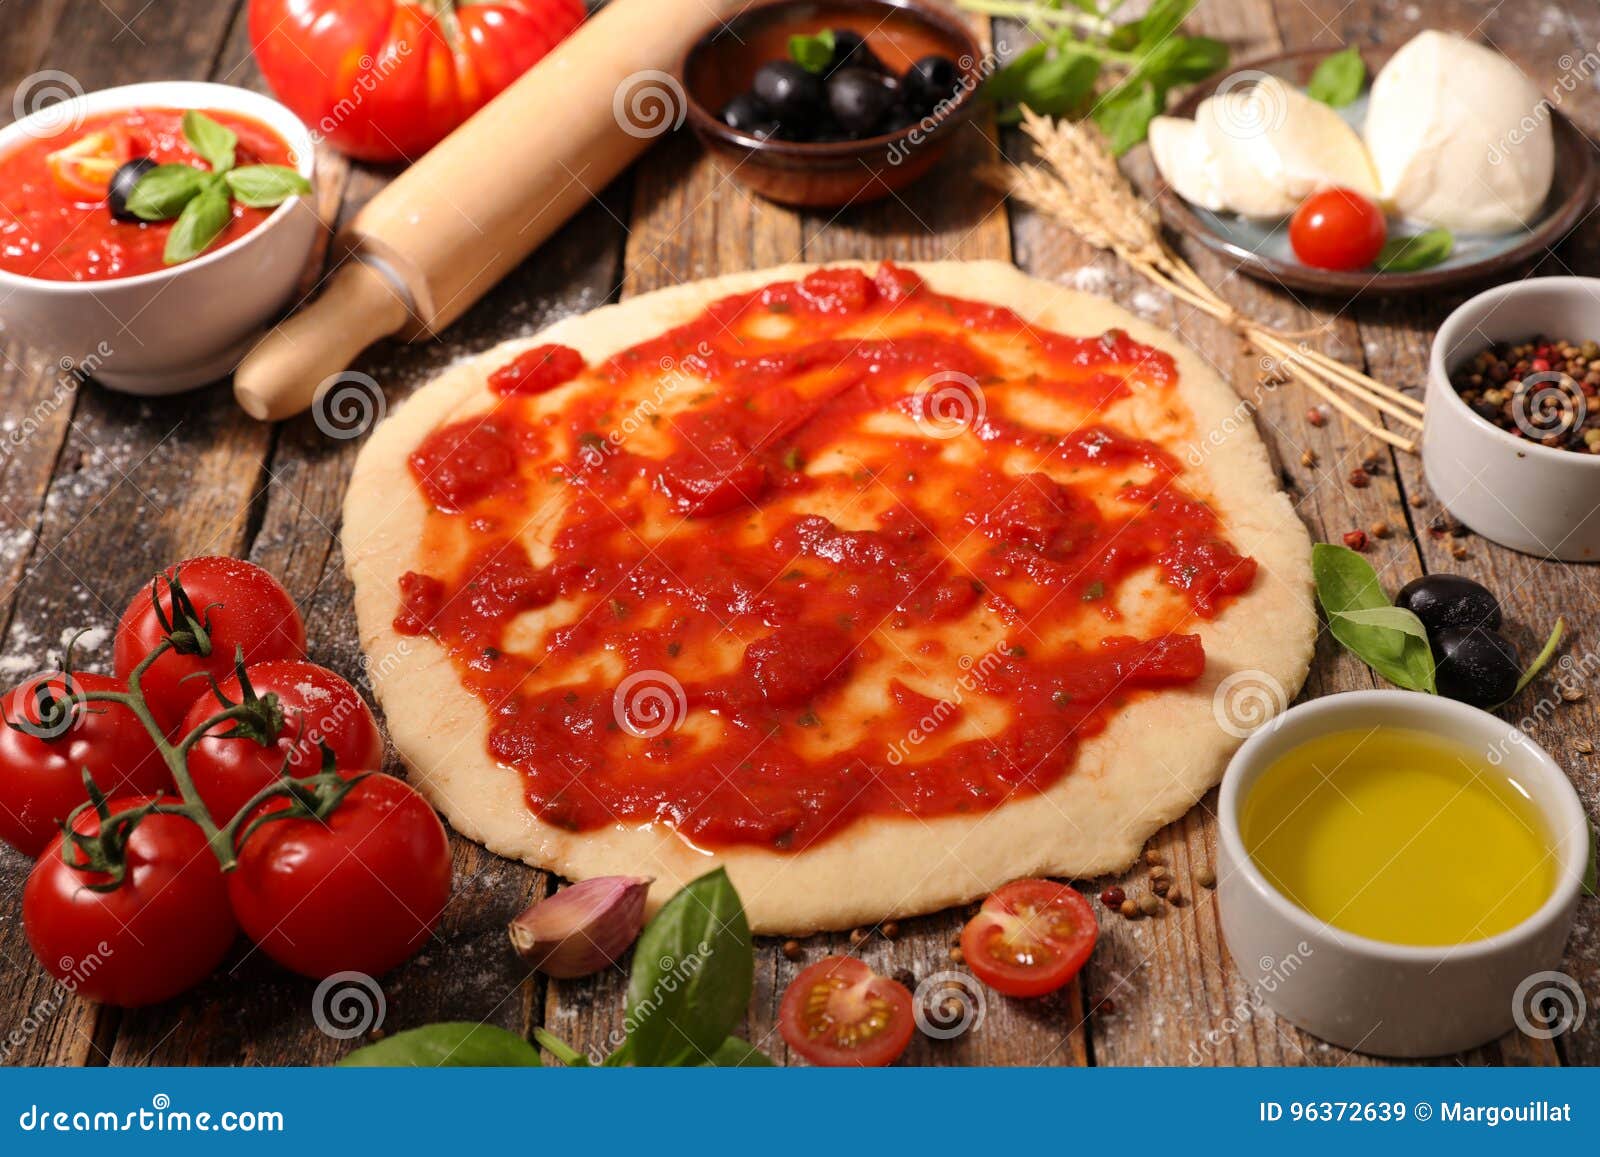 соус для пиццы пепперони из томатной фото 75